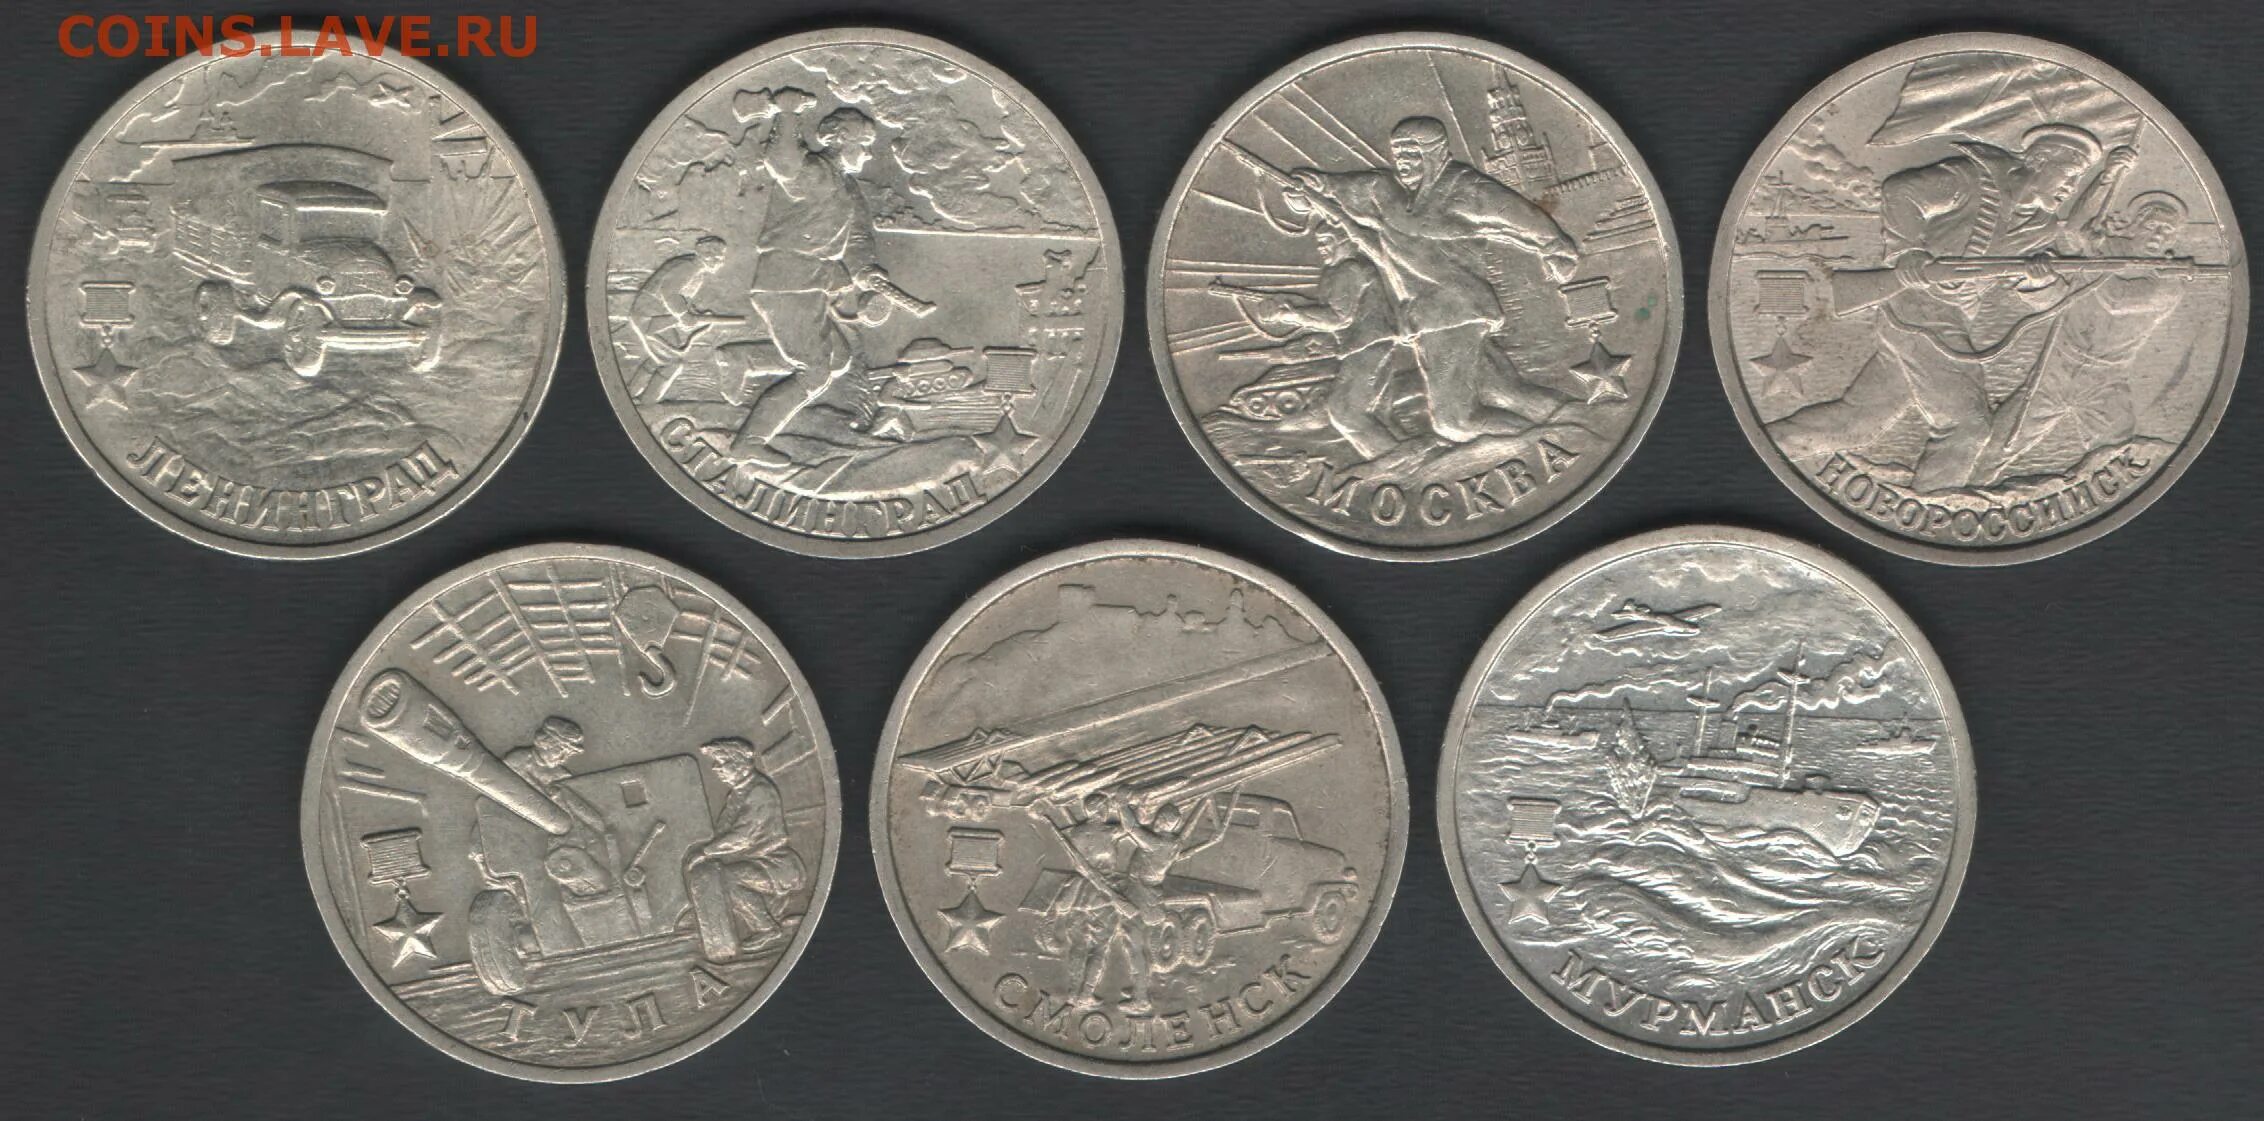 1 к 2000 г. 2 Рубля 2000 города-герои 7 шт. РЖД монеты в Новороссийске.